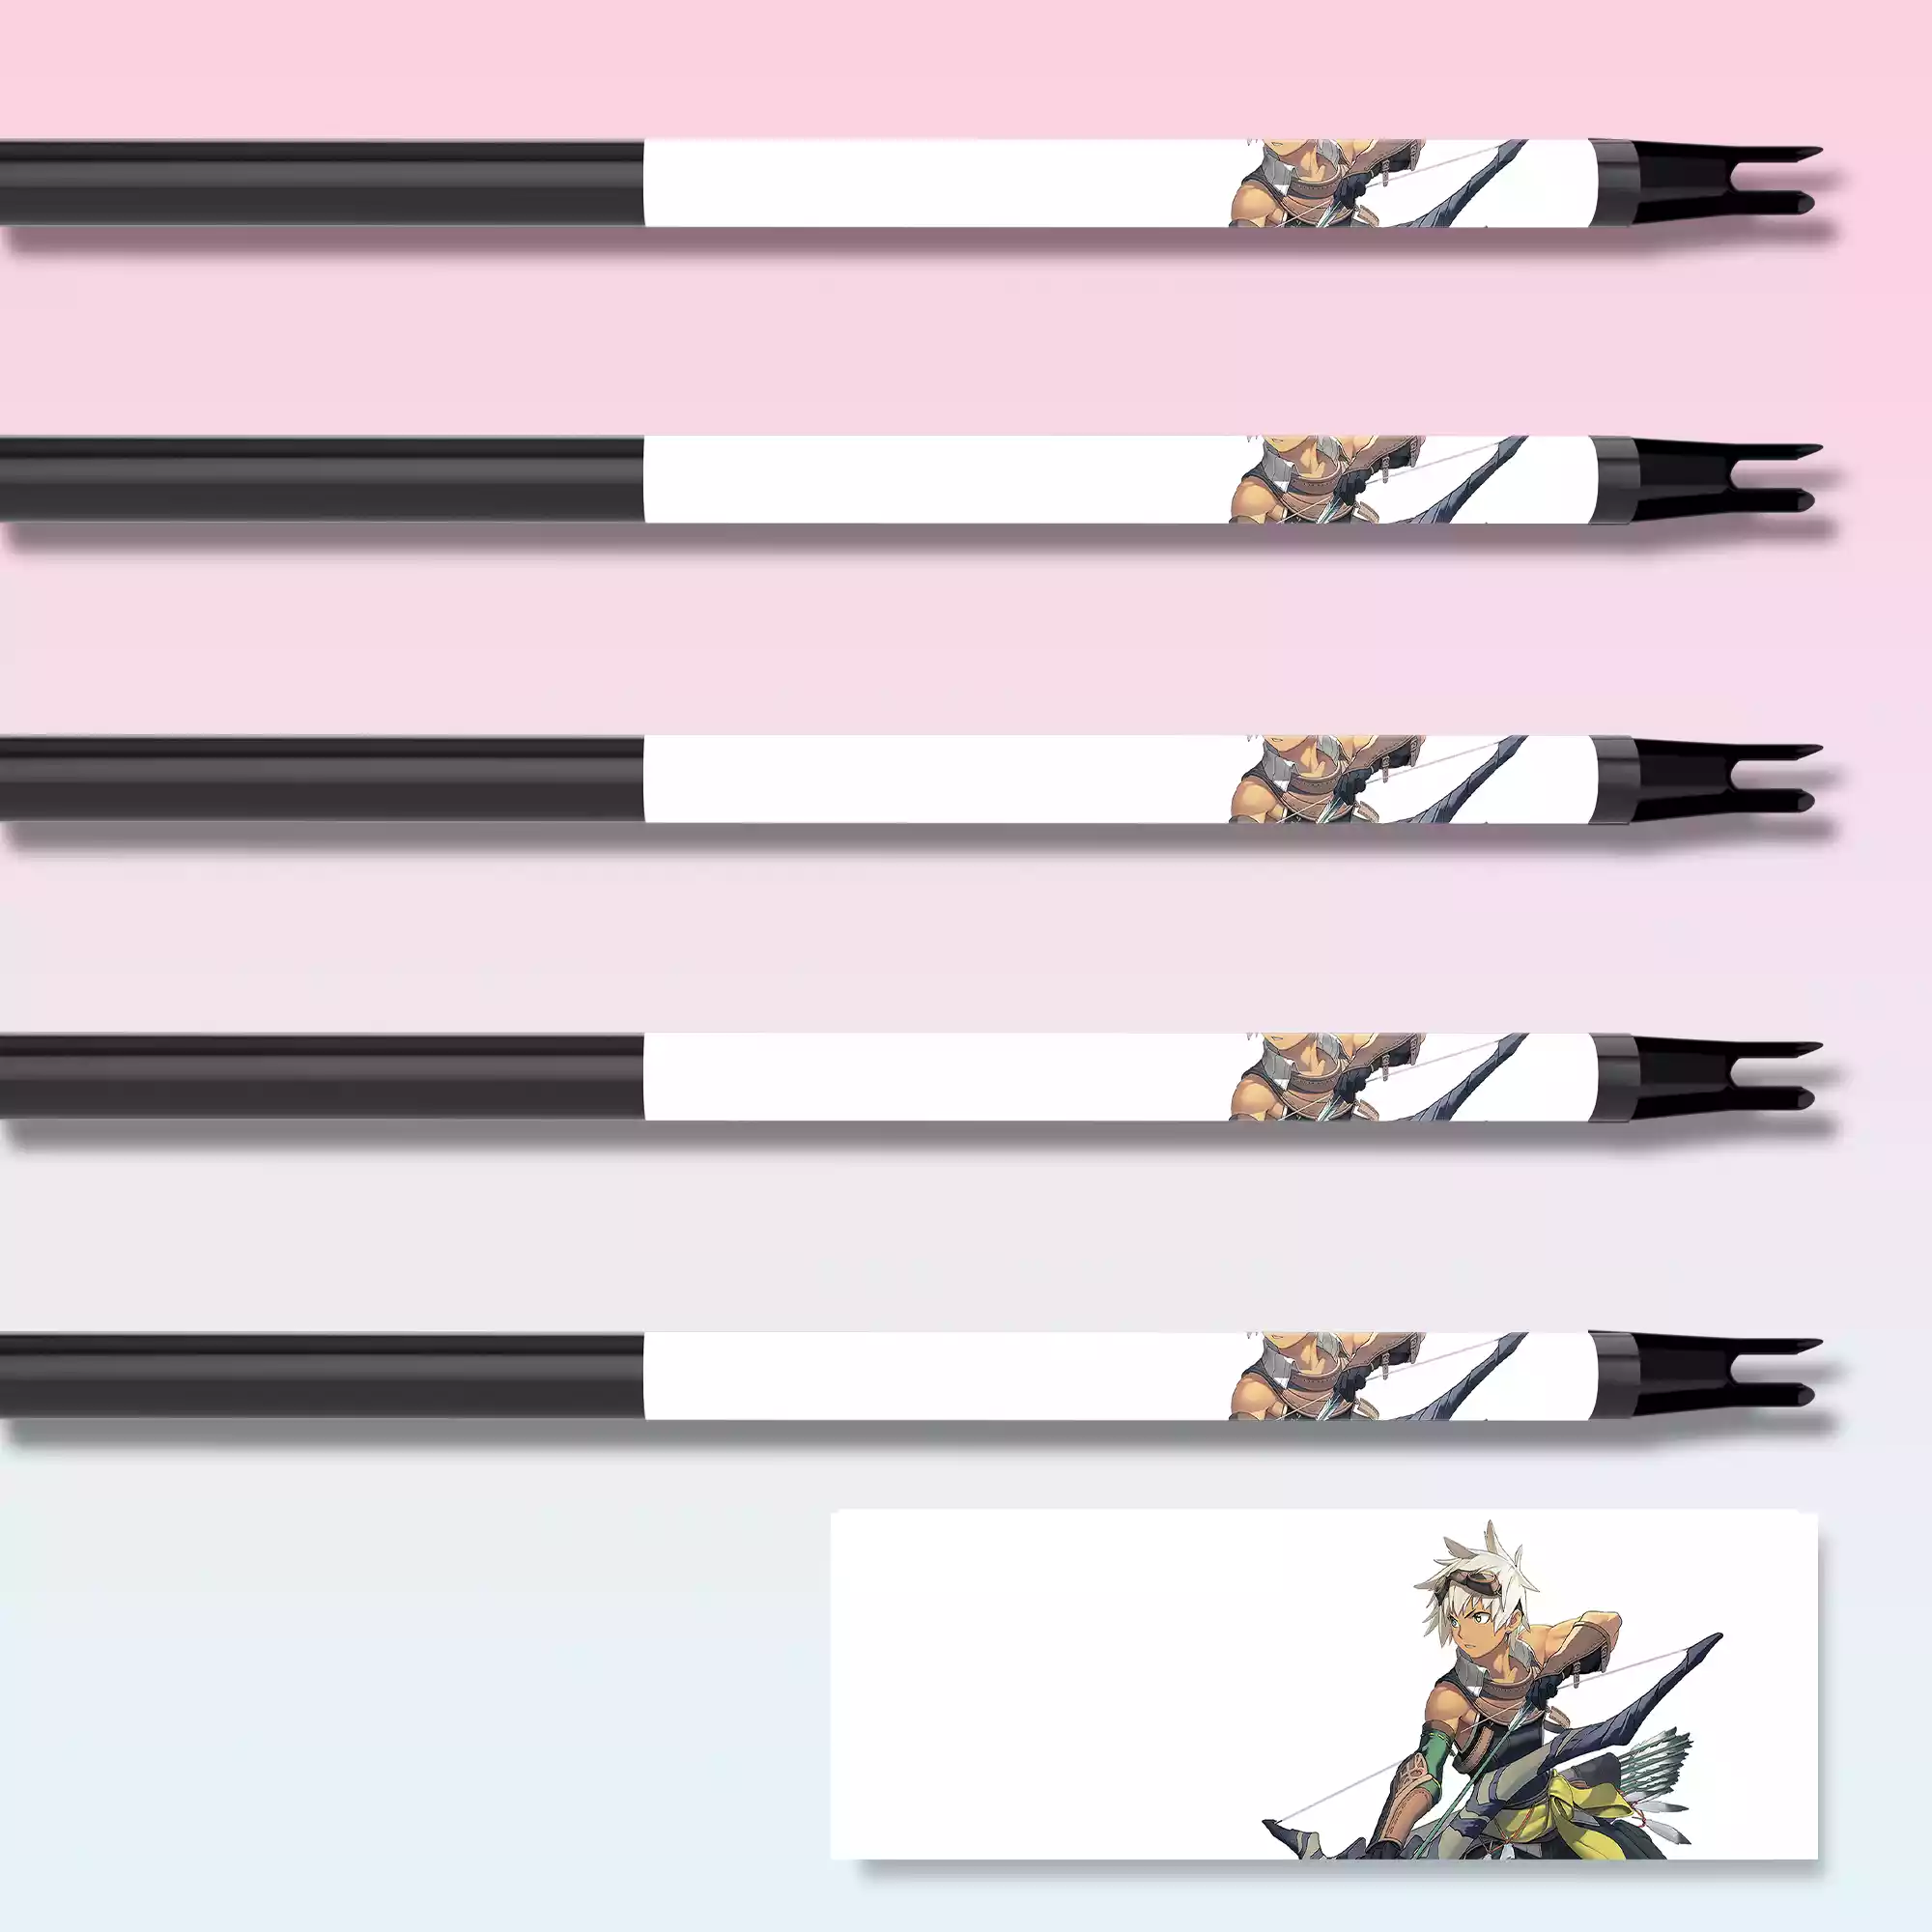 Anime Archery Design Arrow Wrap with Archery Customs logo